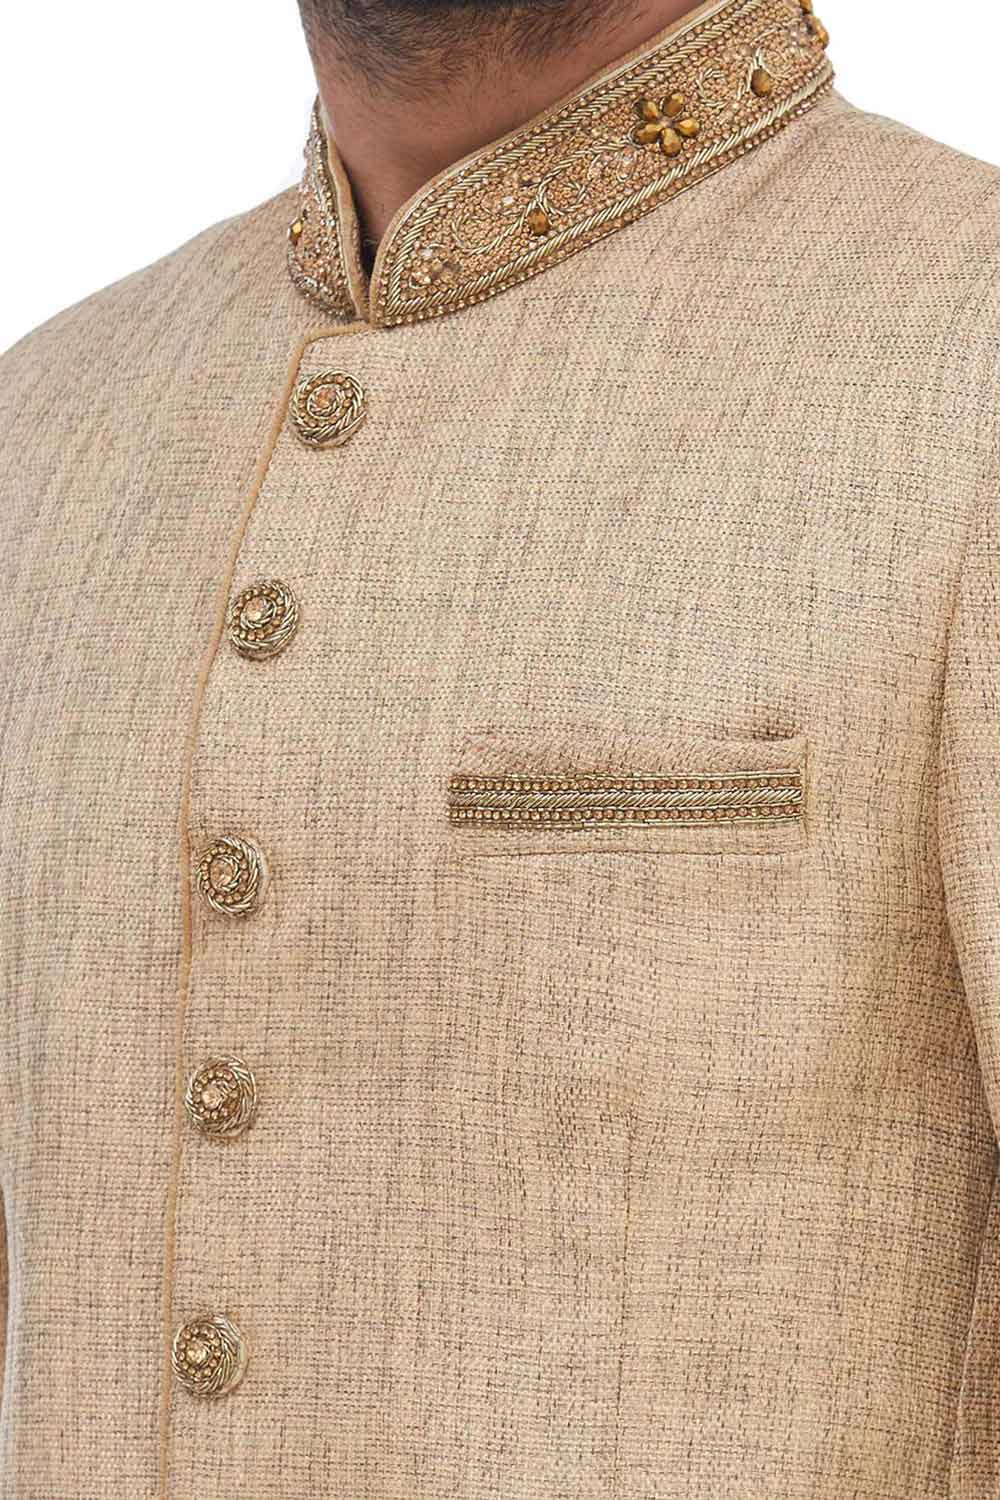 Men's Art Silk Embroidered Jodhpuri Jacket